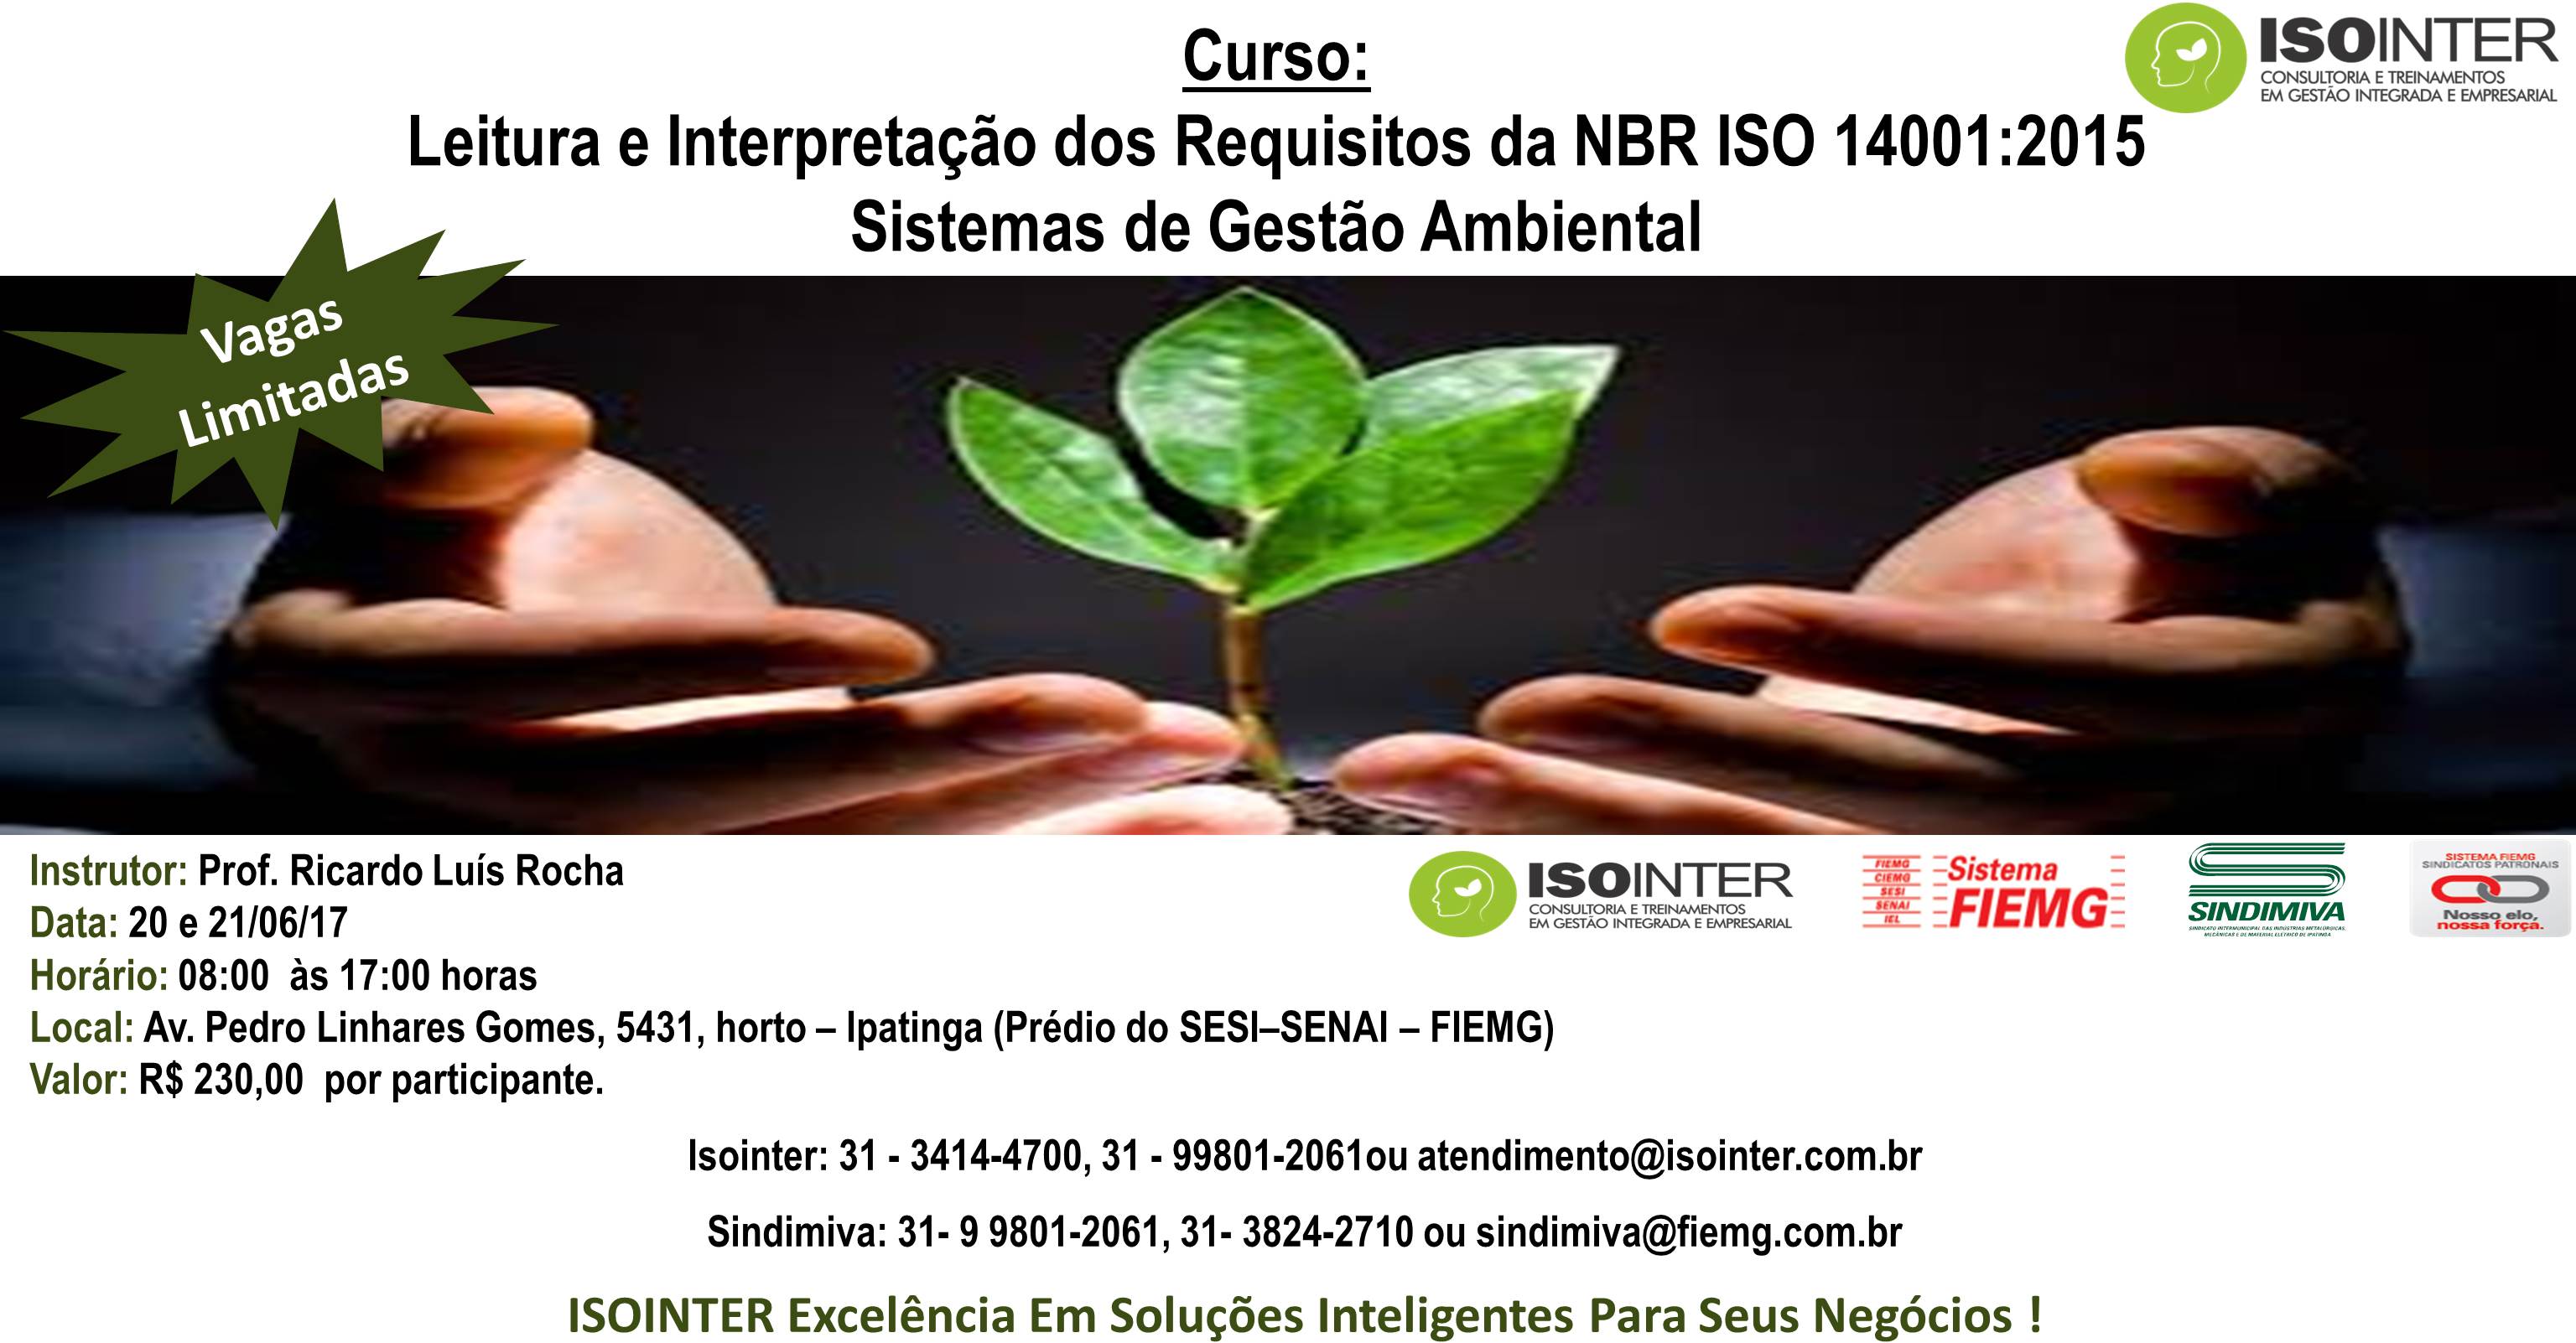 Curso: Leitura e Interpretação dos Requisitos da NBR ISO 14001:2015  Sistemas de Gestão Ambiental 